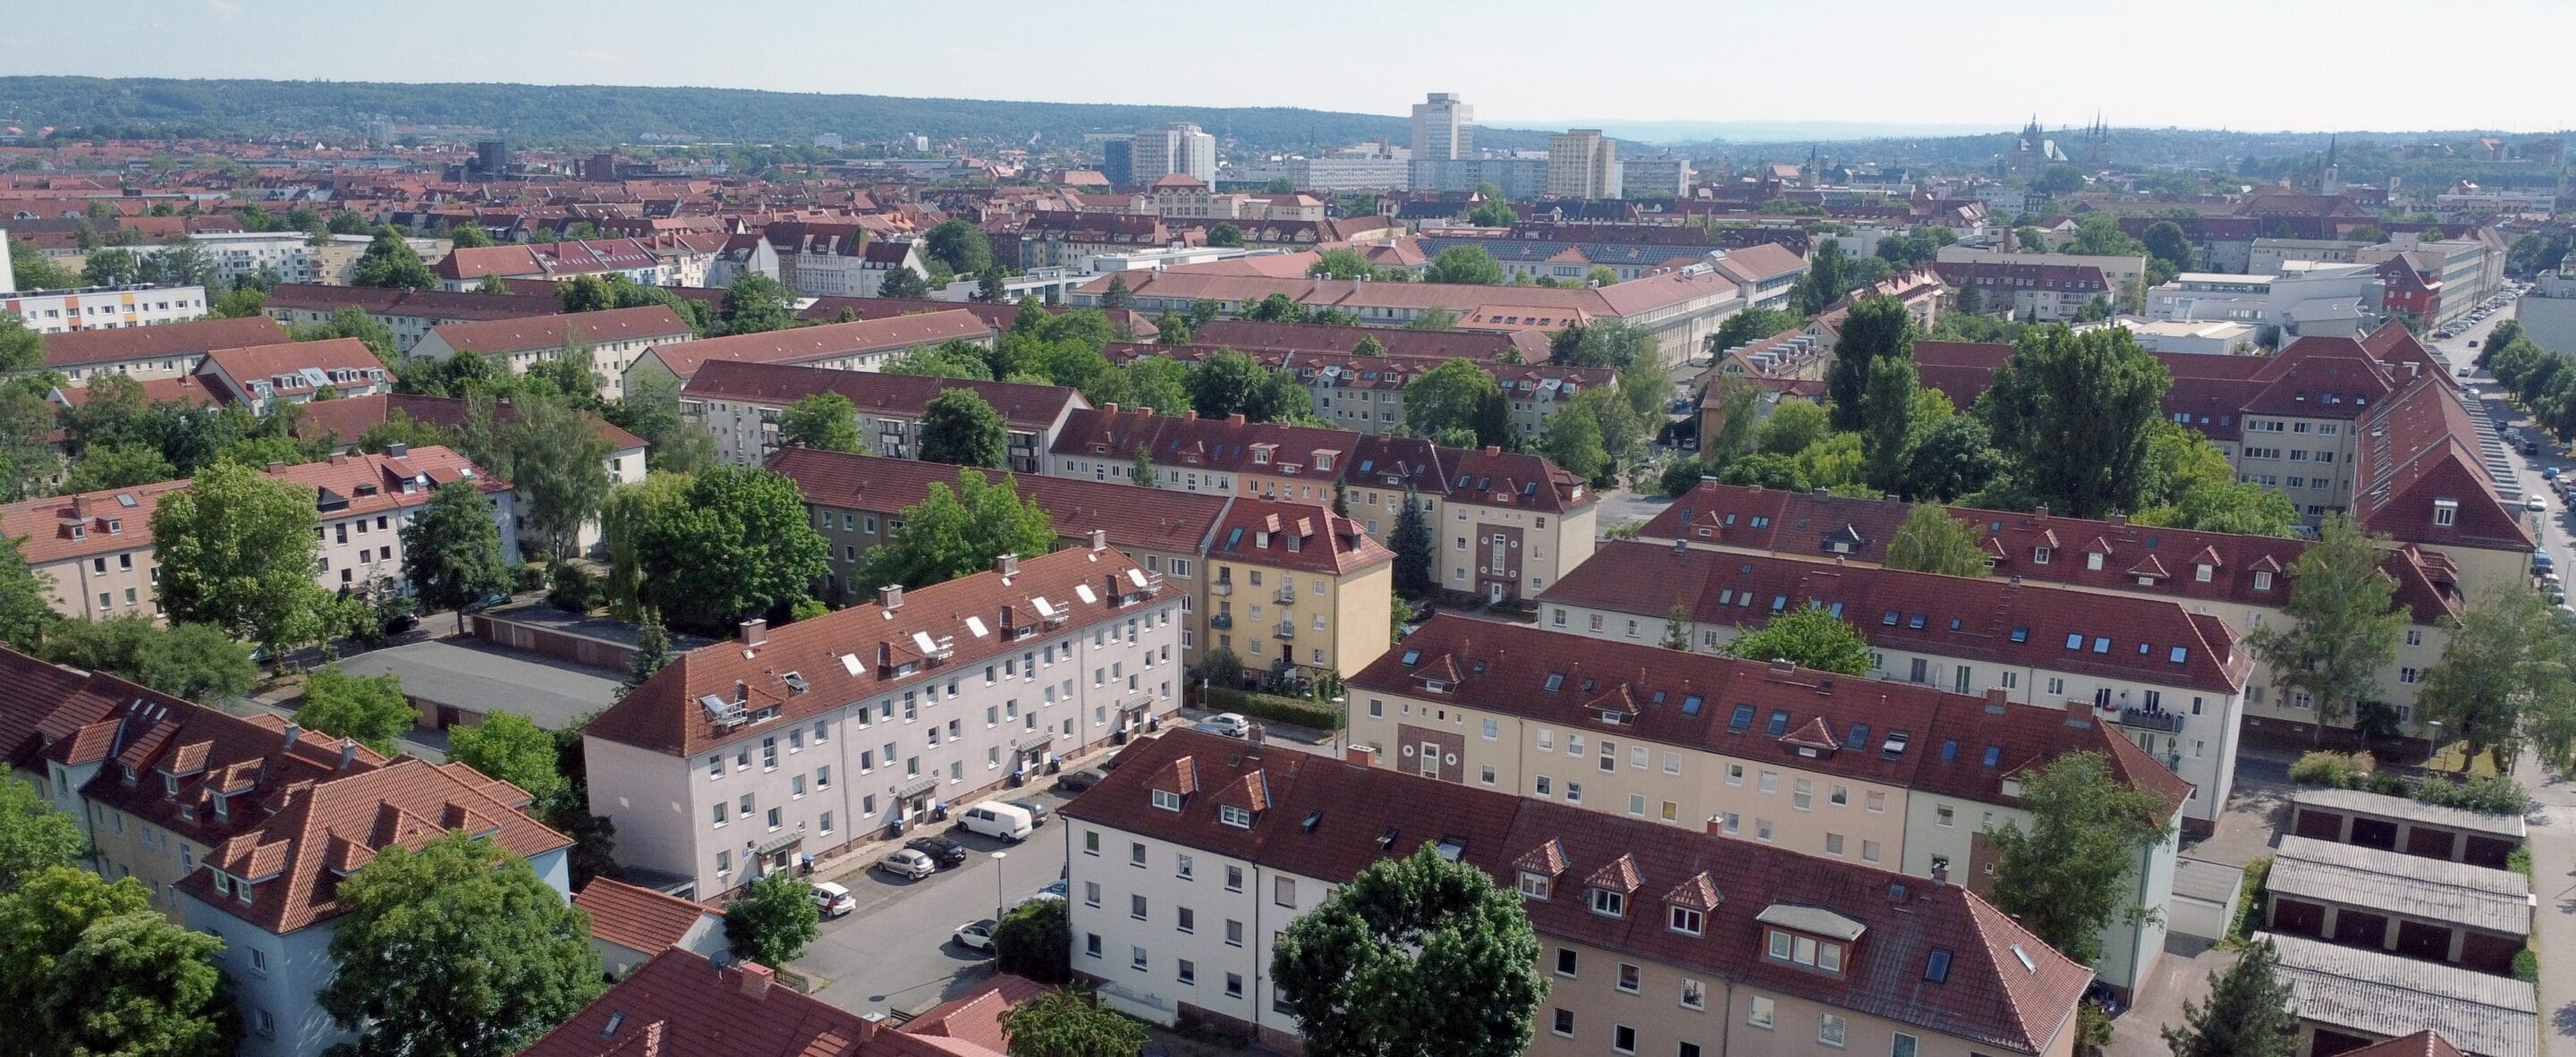 Das Hanseviertel Erfurt in einer Luftaufnahme